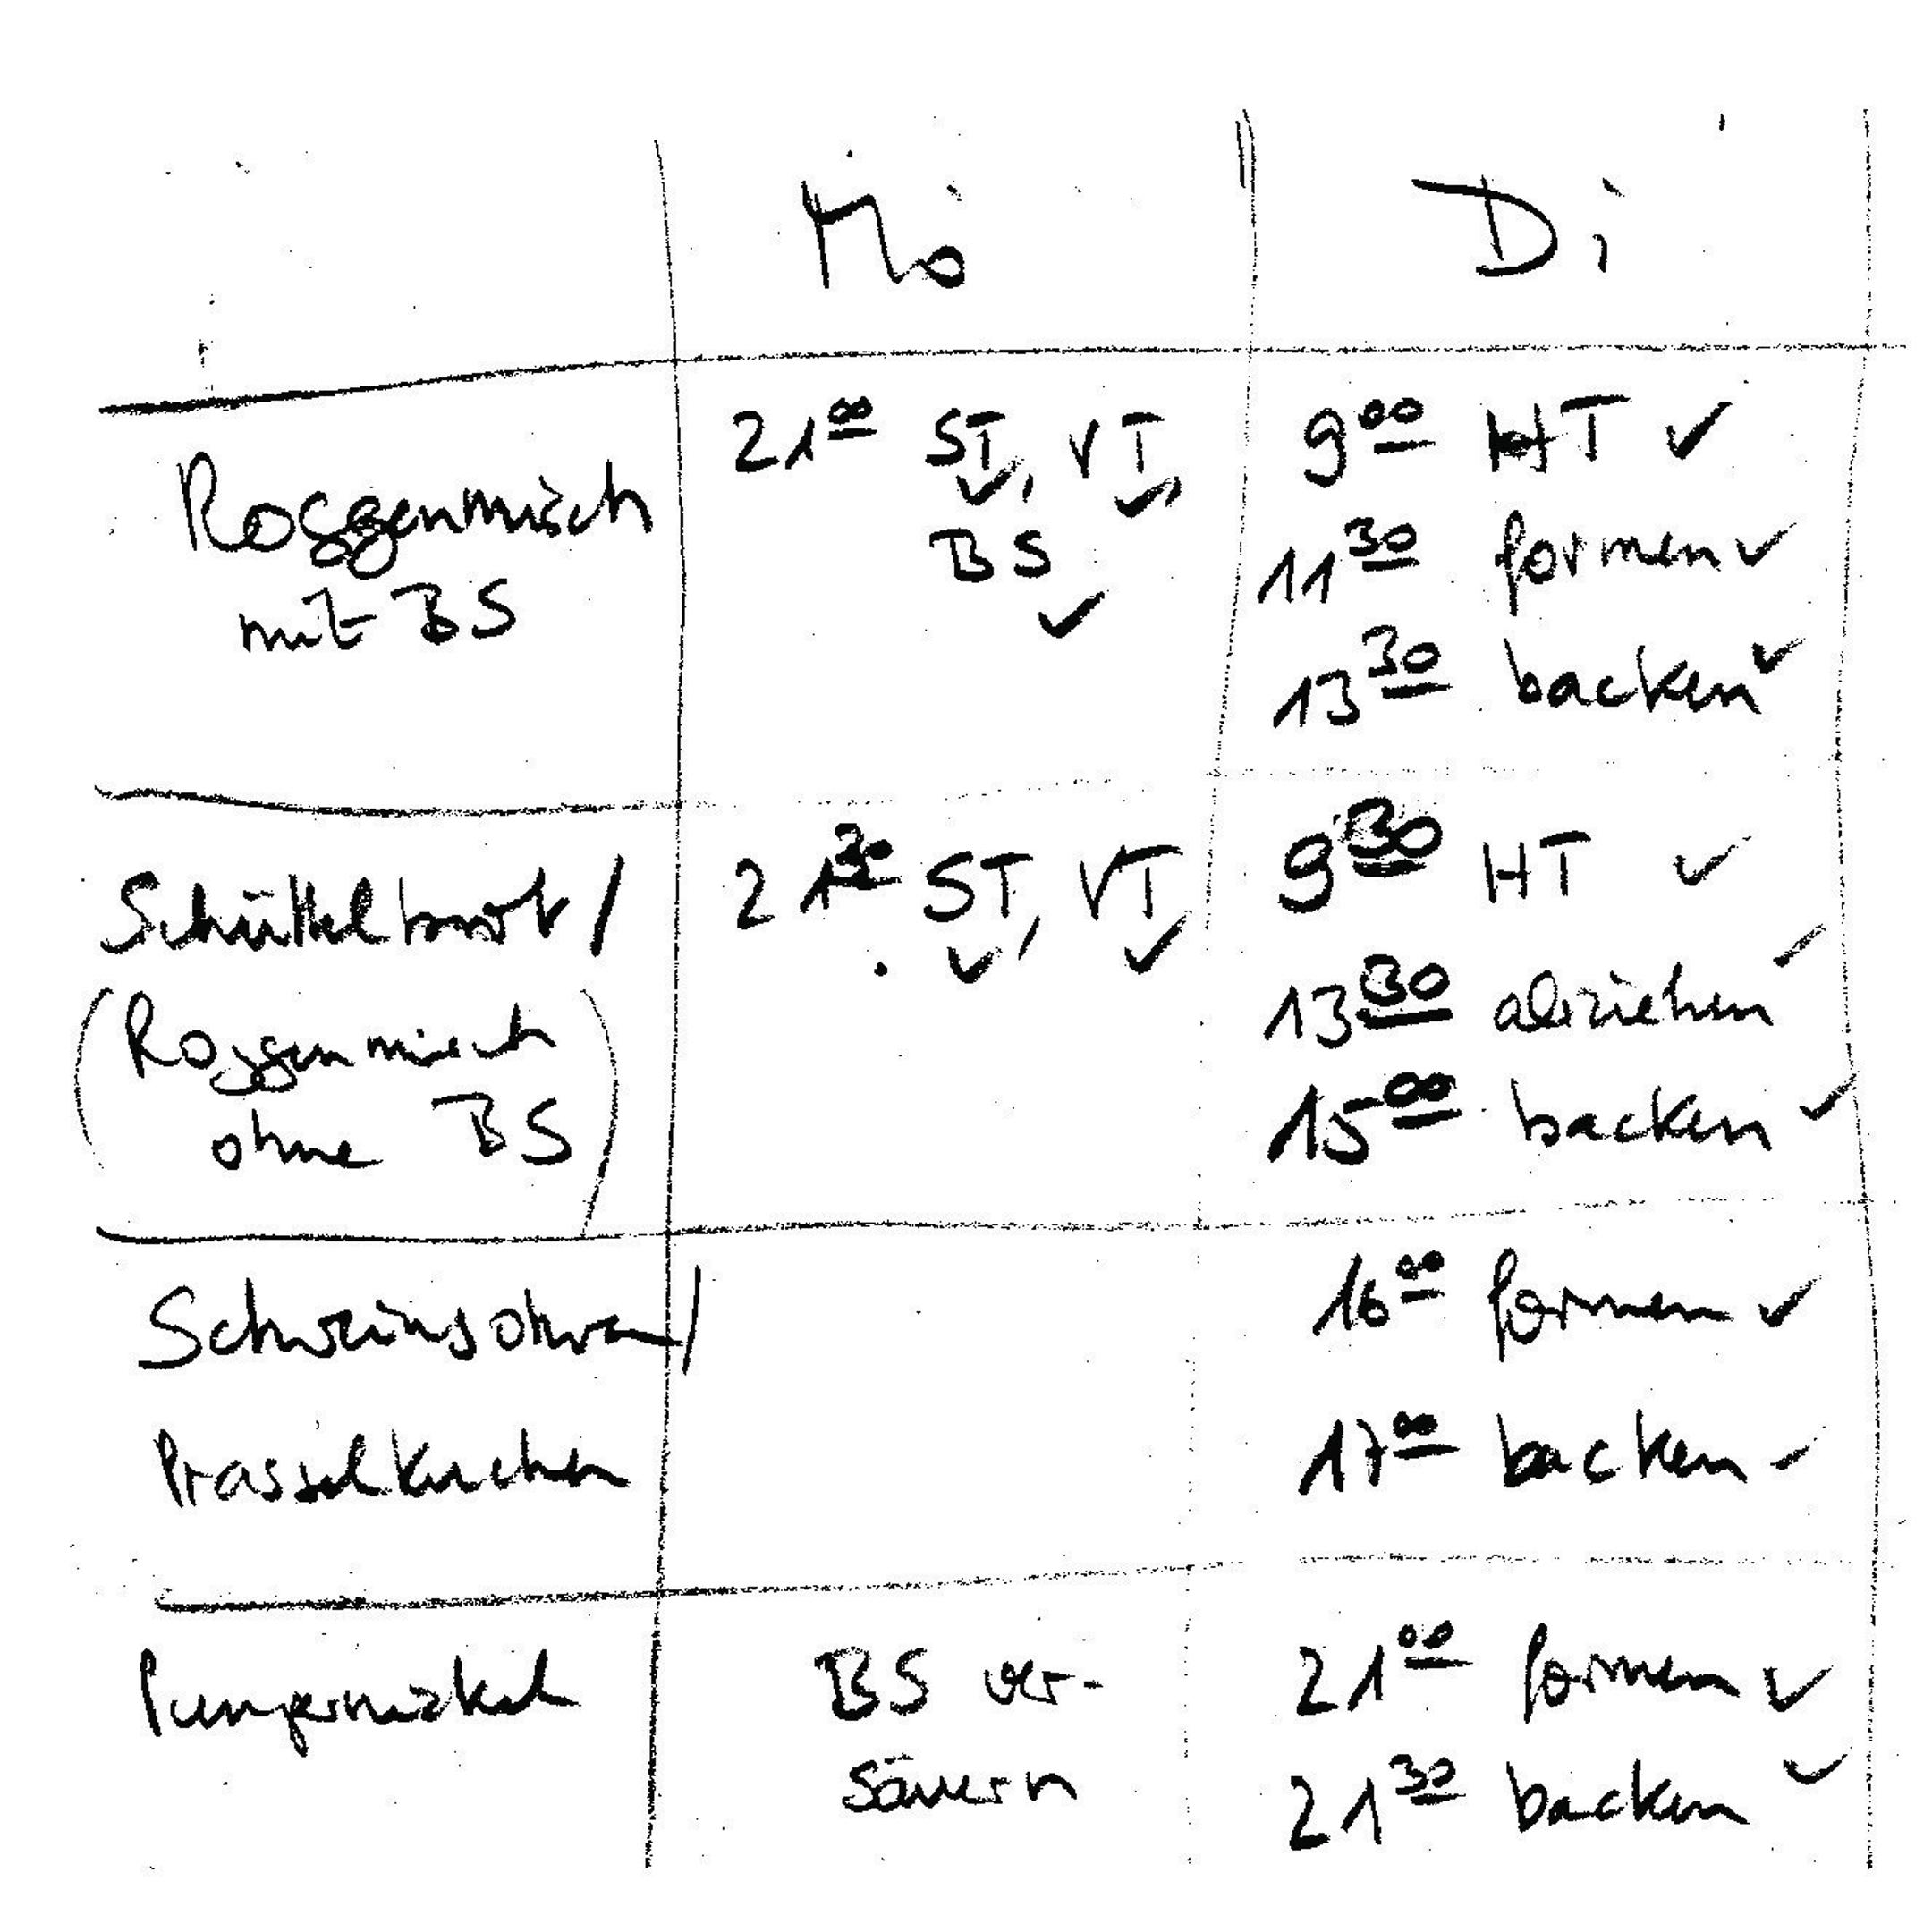 Ein handgeschriebener Plan in Tabellenform zeigt den zeitlichen Ablauf für einen vollen Backtag.